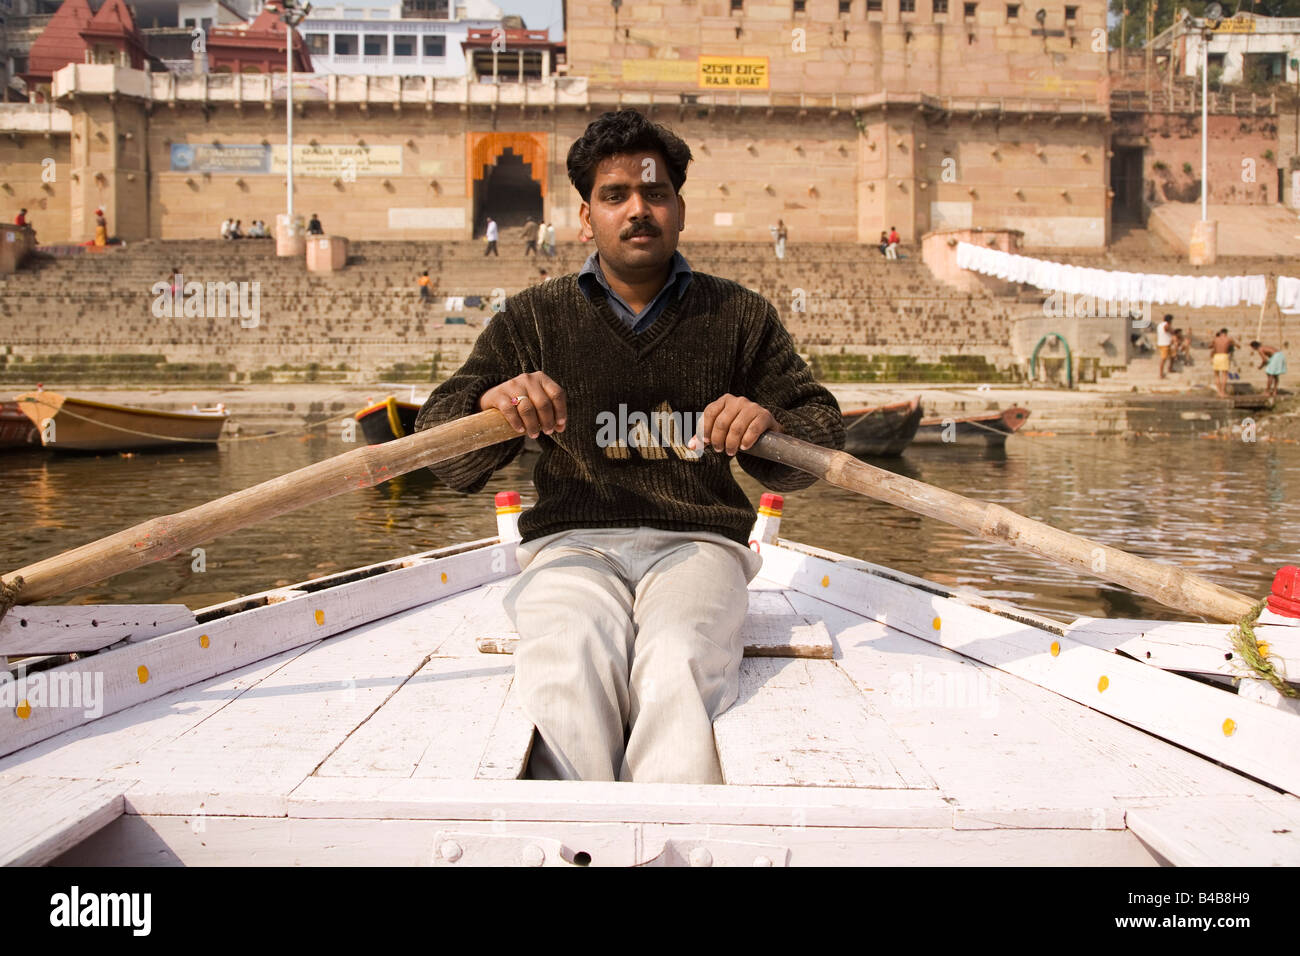 L'un des bateliers lignes son bateau dans la ville de Varanasi, en Inde. Banque D'Images